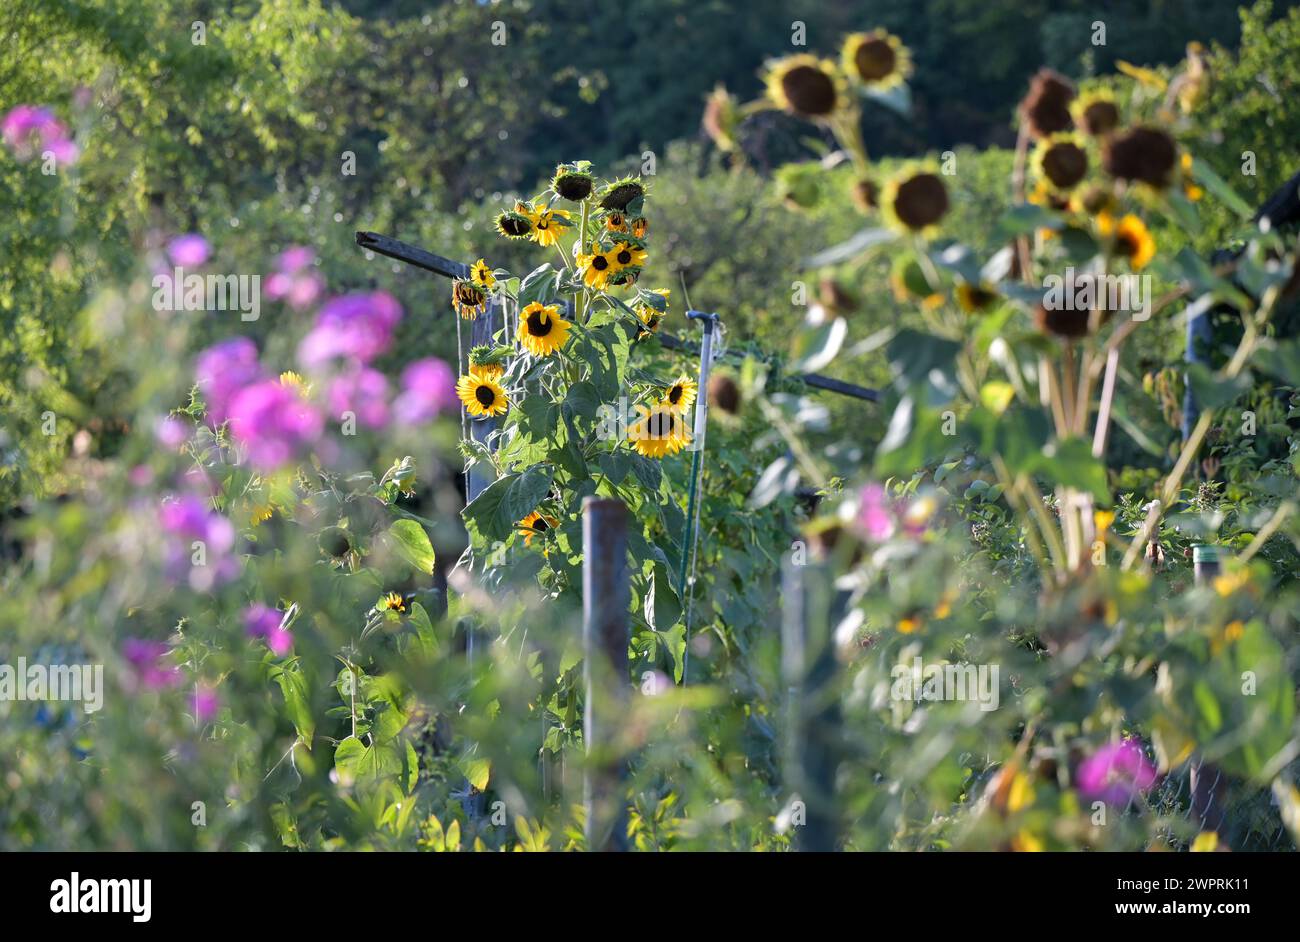 Blüten im Spätsommer: Blick auf Sonnenblumen, Grün und lila blühende Pflanzen in einem alten Garten. Stockfoto